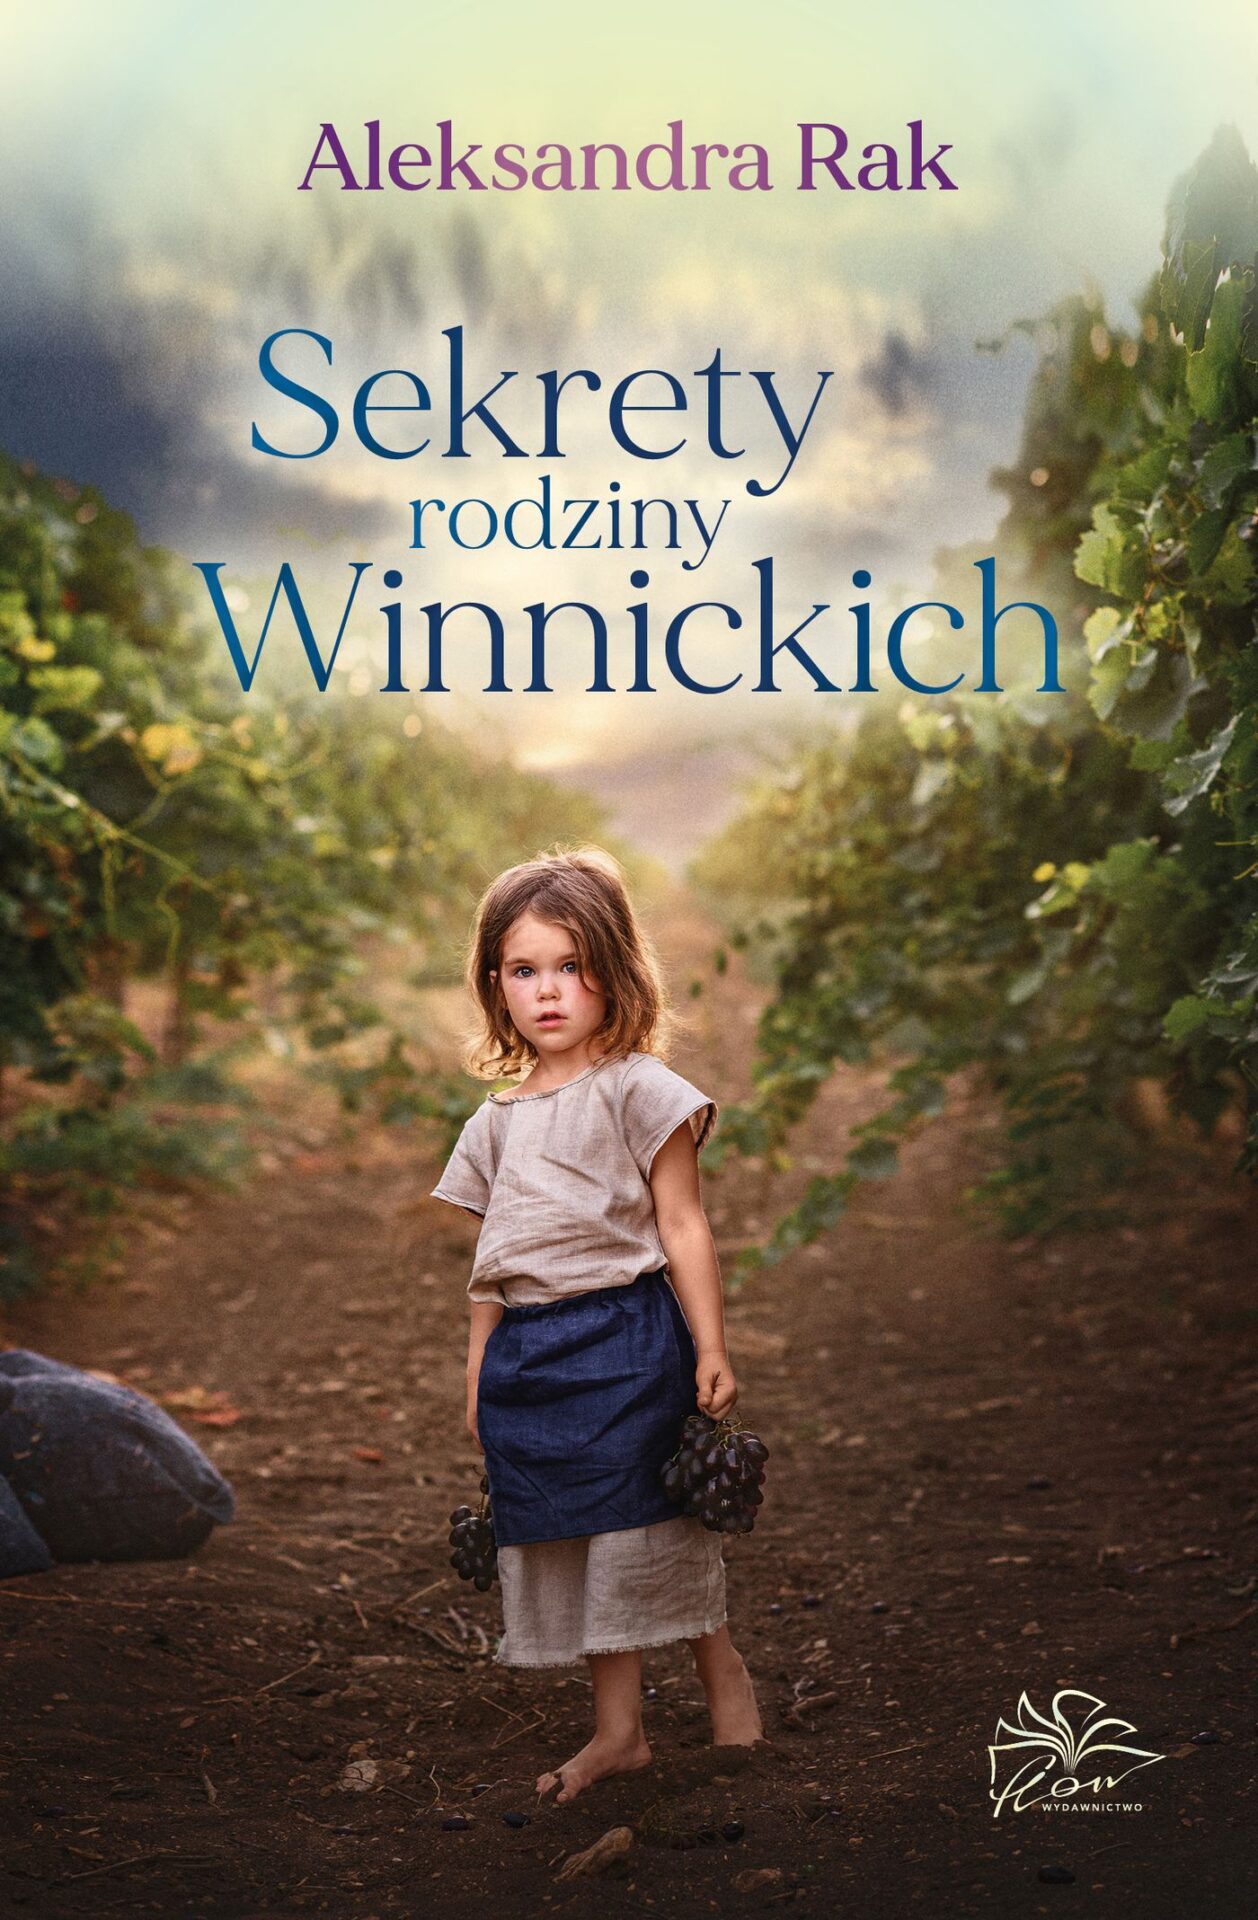 okładka książki pod tytułem Sekrety rodziny Winnickich, autor Aleksandra Rak